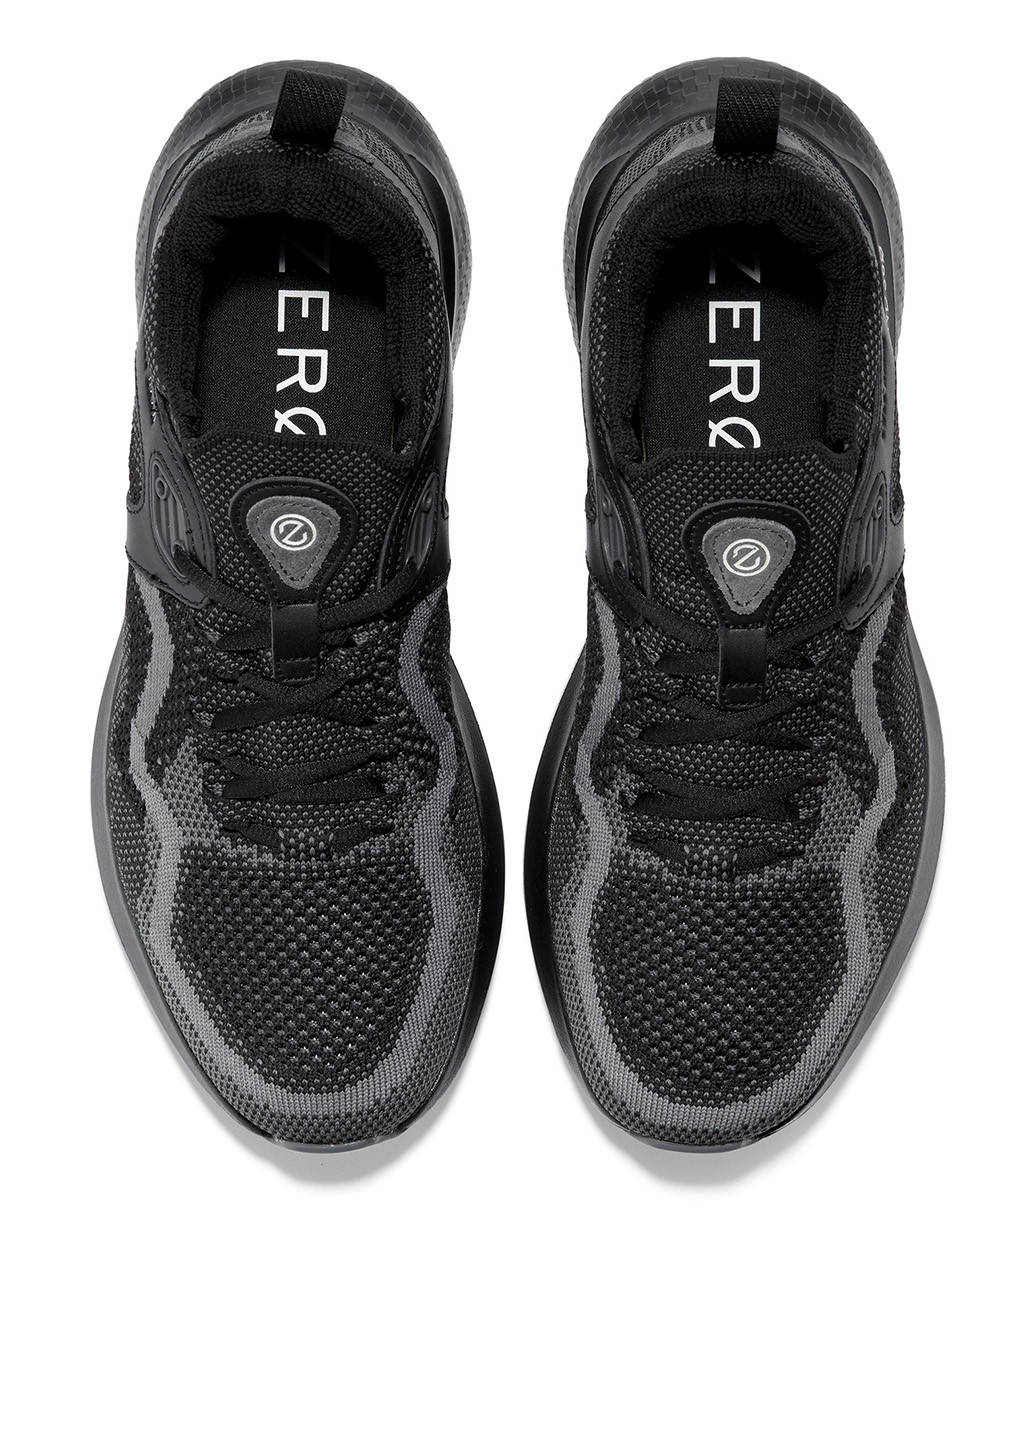 Черные демисезонные кроссовки Cole Haan ZERØGRAND Outpace 2 SL Running Shoe